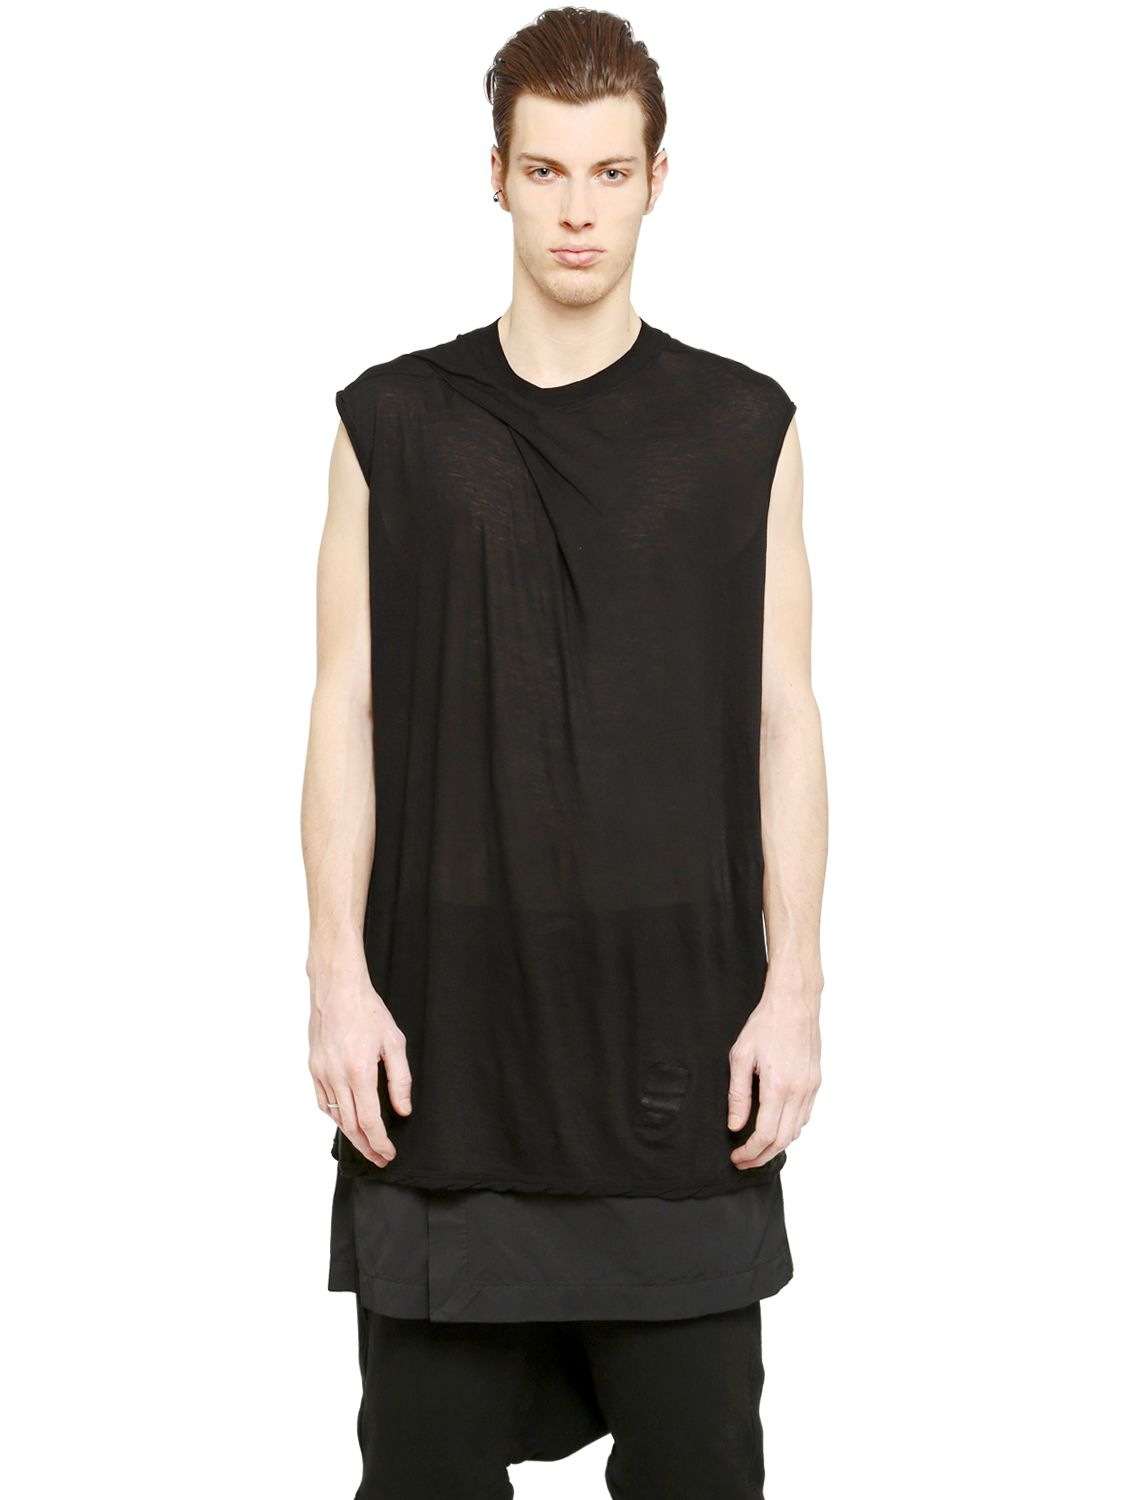 Lyst - Rick Owens Drkshdw Sleeveless Light Cotton T-shirt in Black for Men